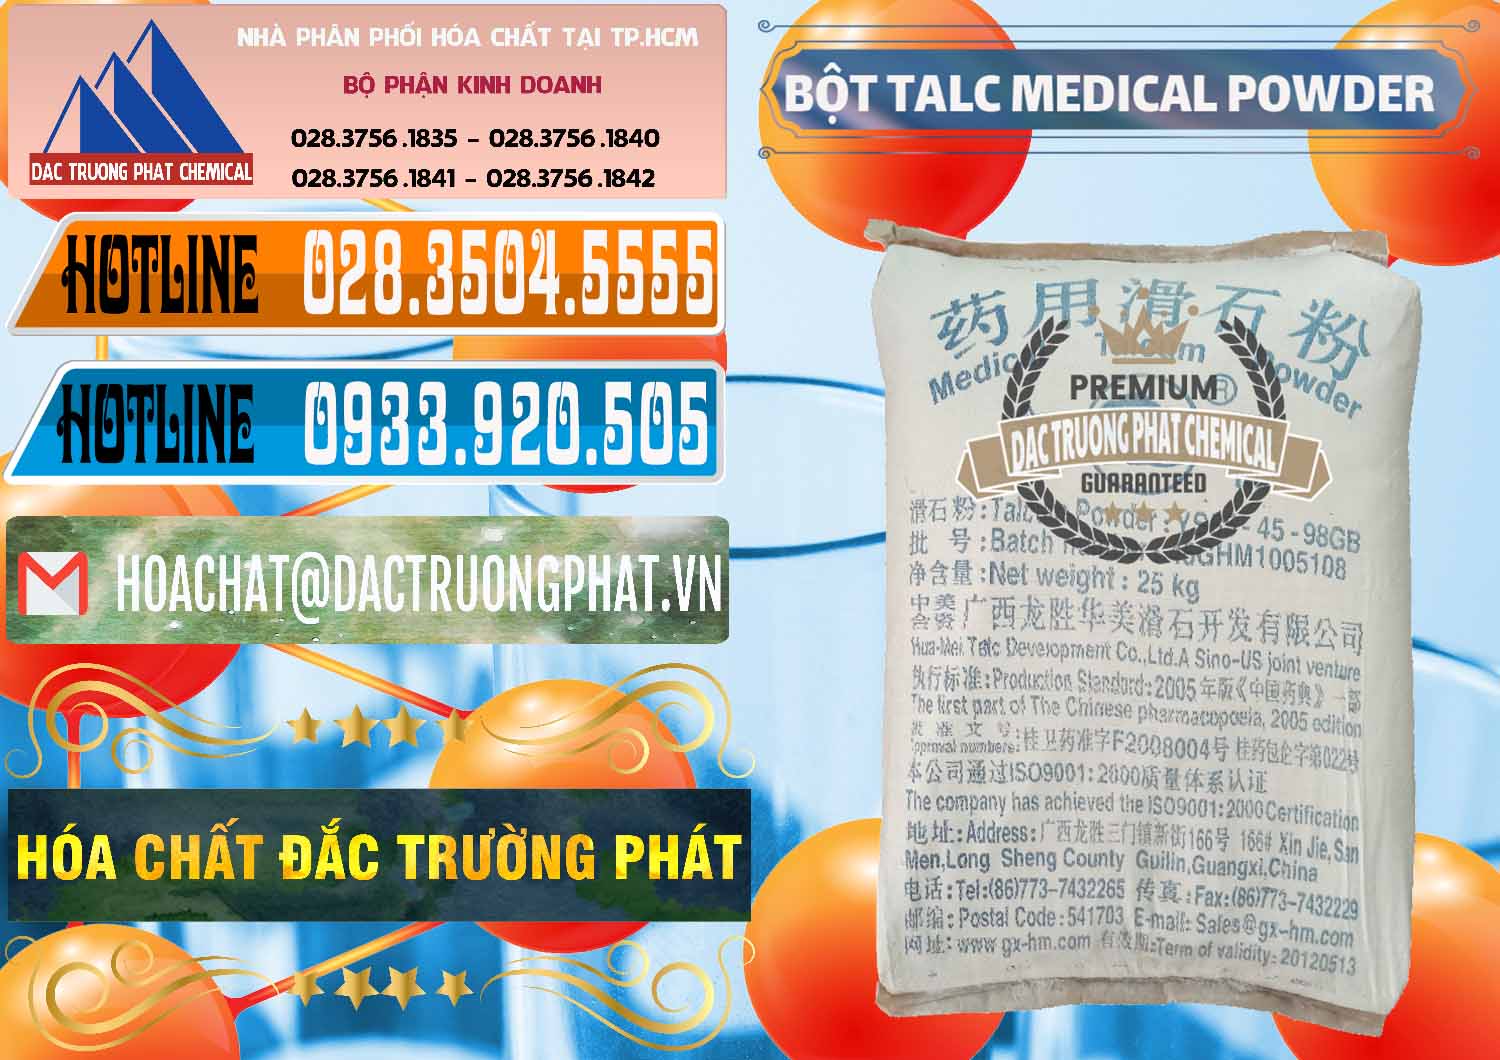 Cty nhập khẩu ( bán ) Bột Talc Medical Powder Trung Quốc China - 0036 - Nhà phân phối và cung ứng hóa chất tại TP.HCM - stmp.net